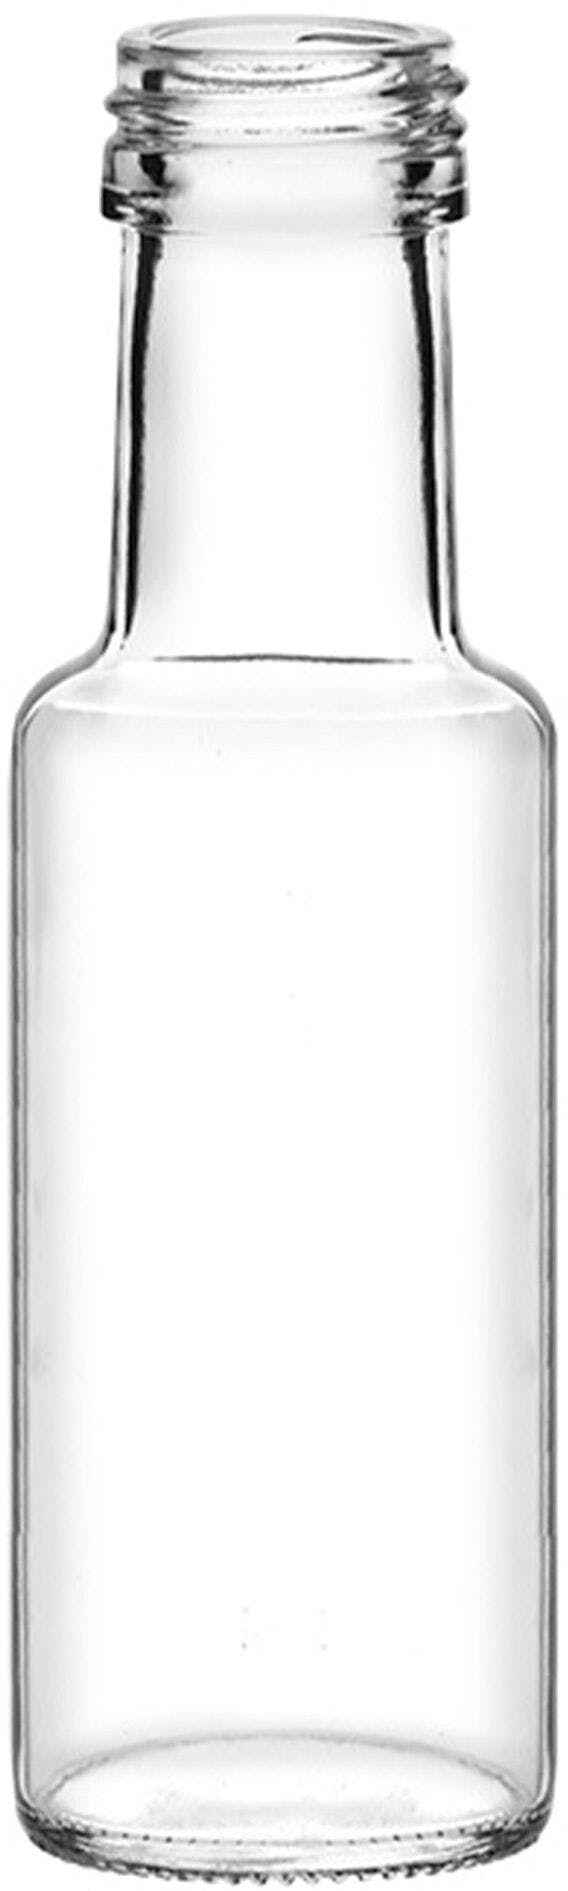 Flasche DORICA  125 ml BG-Drehverschluss 